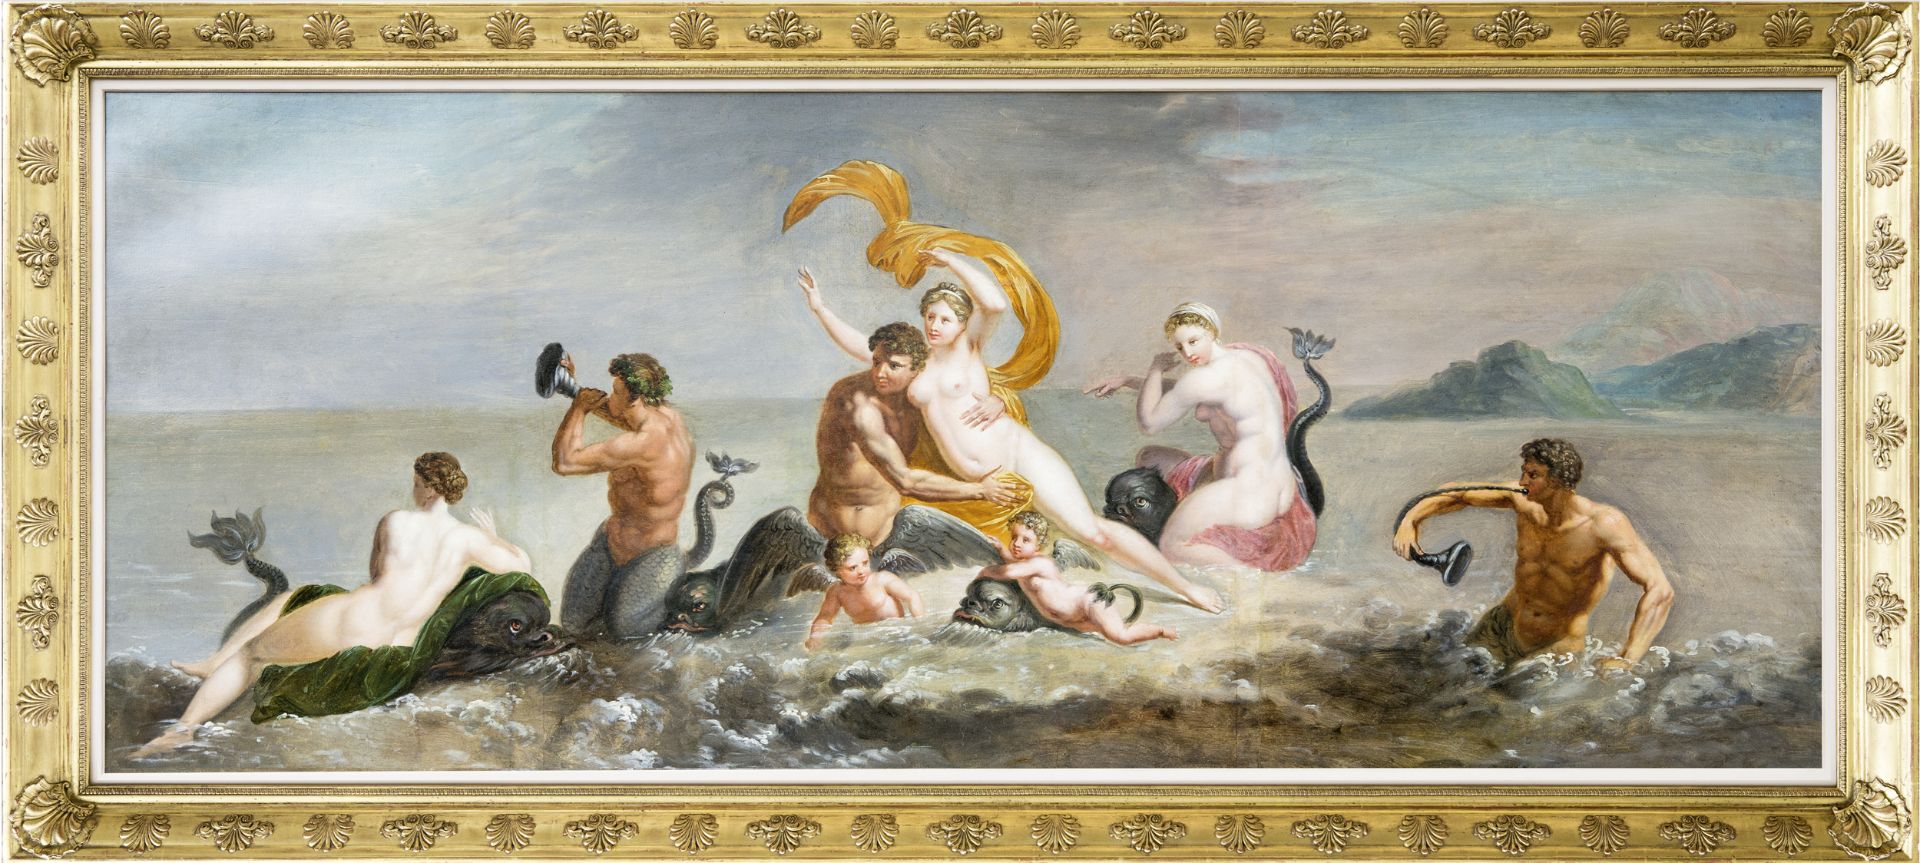 Mythologisches Gemälde "Triumph der Galateia", Italien/Rom?, 1750/70 - Bild 2 aus 3